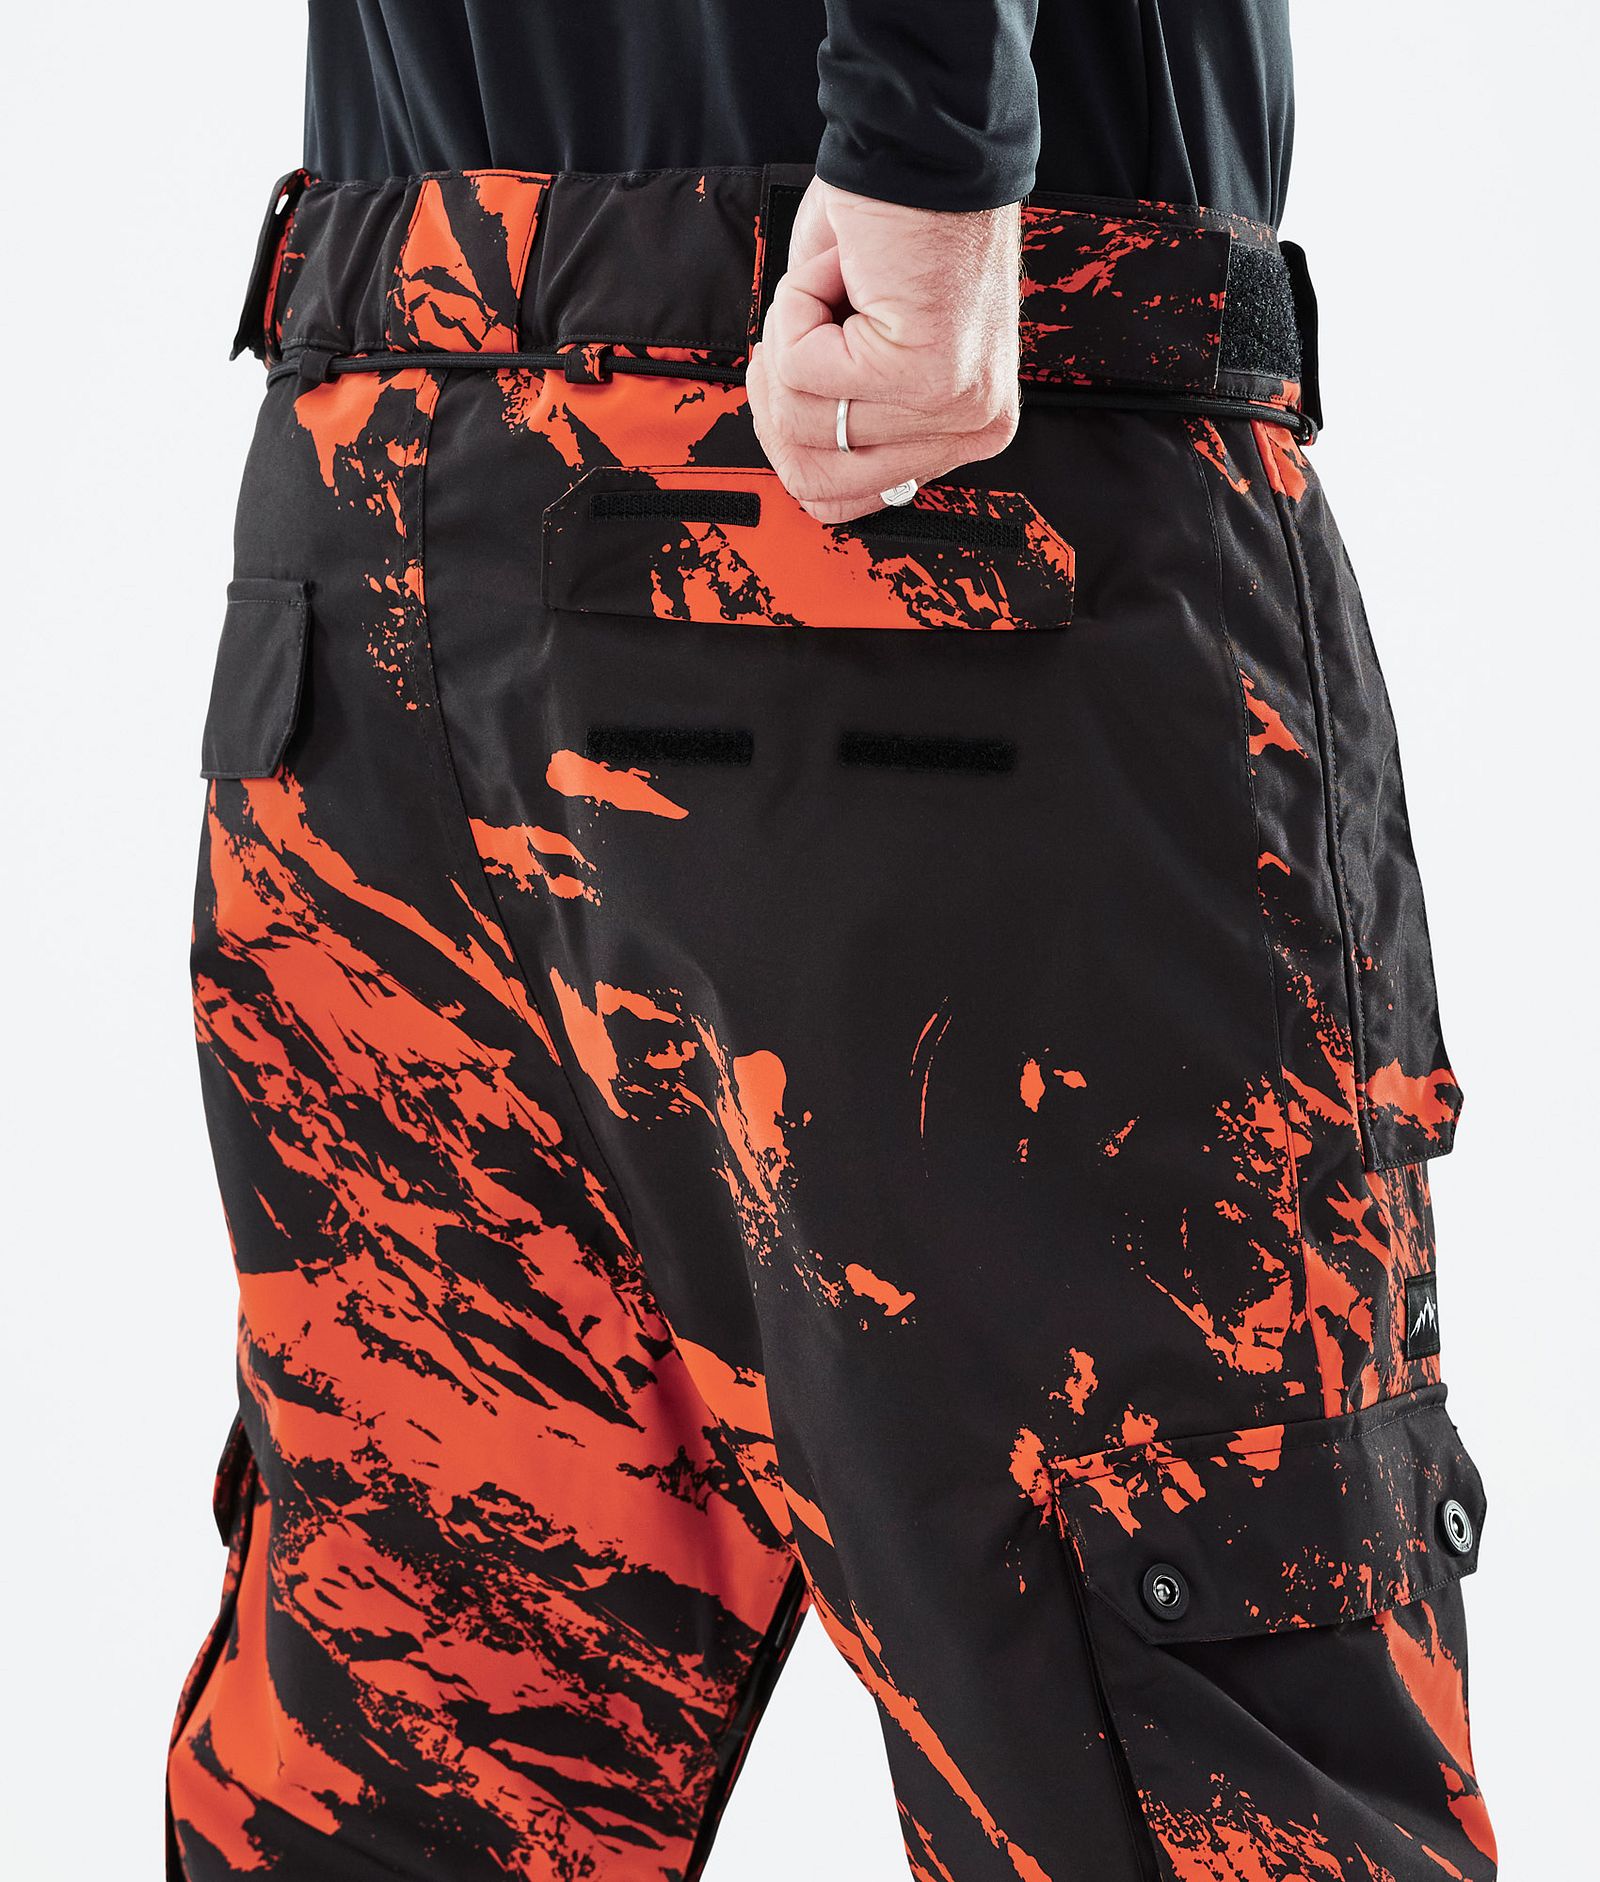 Iconic スキーパンツ メンズ Paint Orange